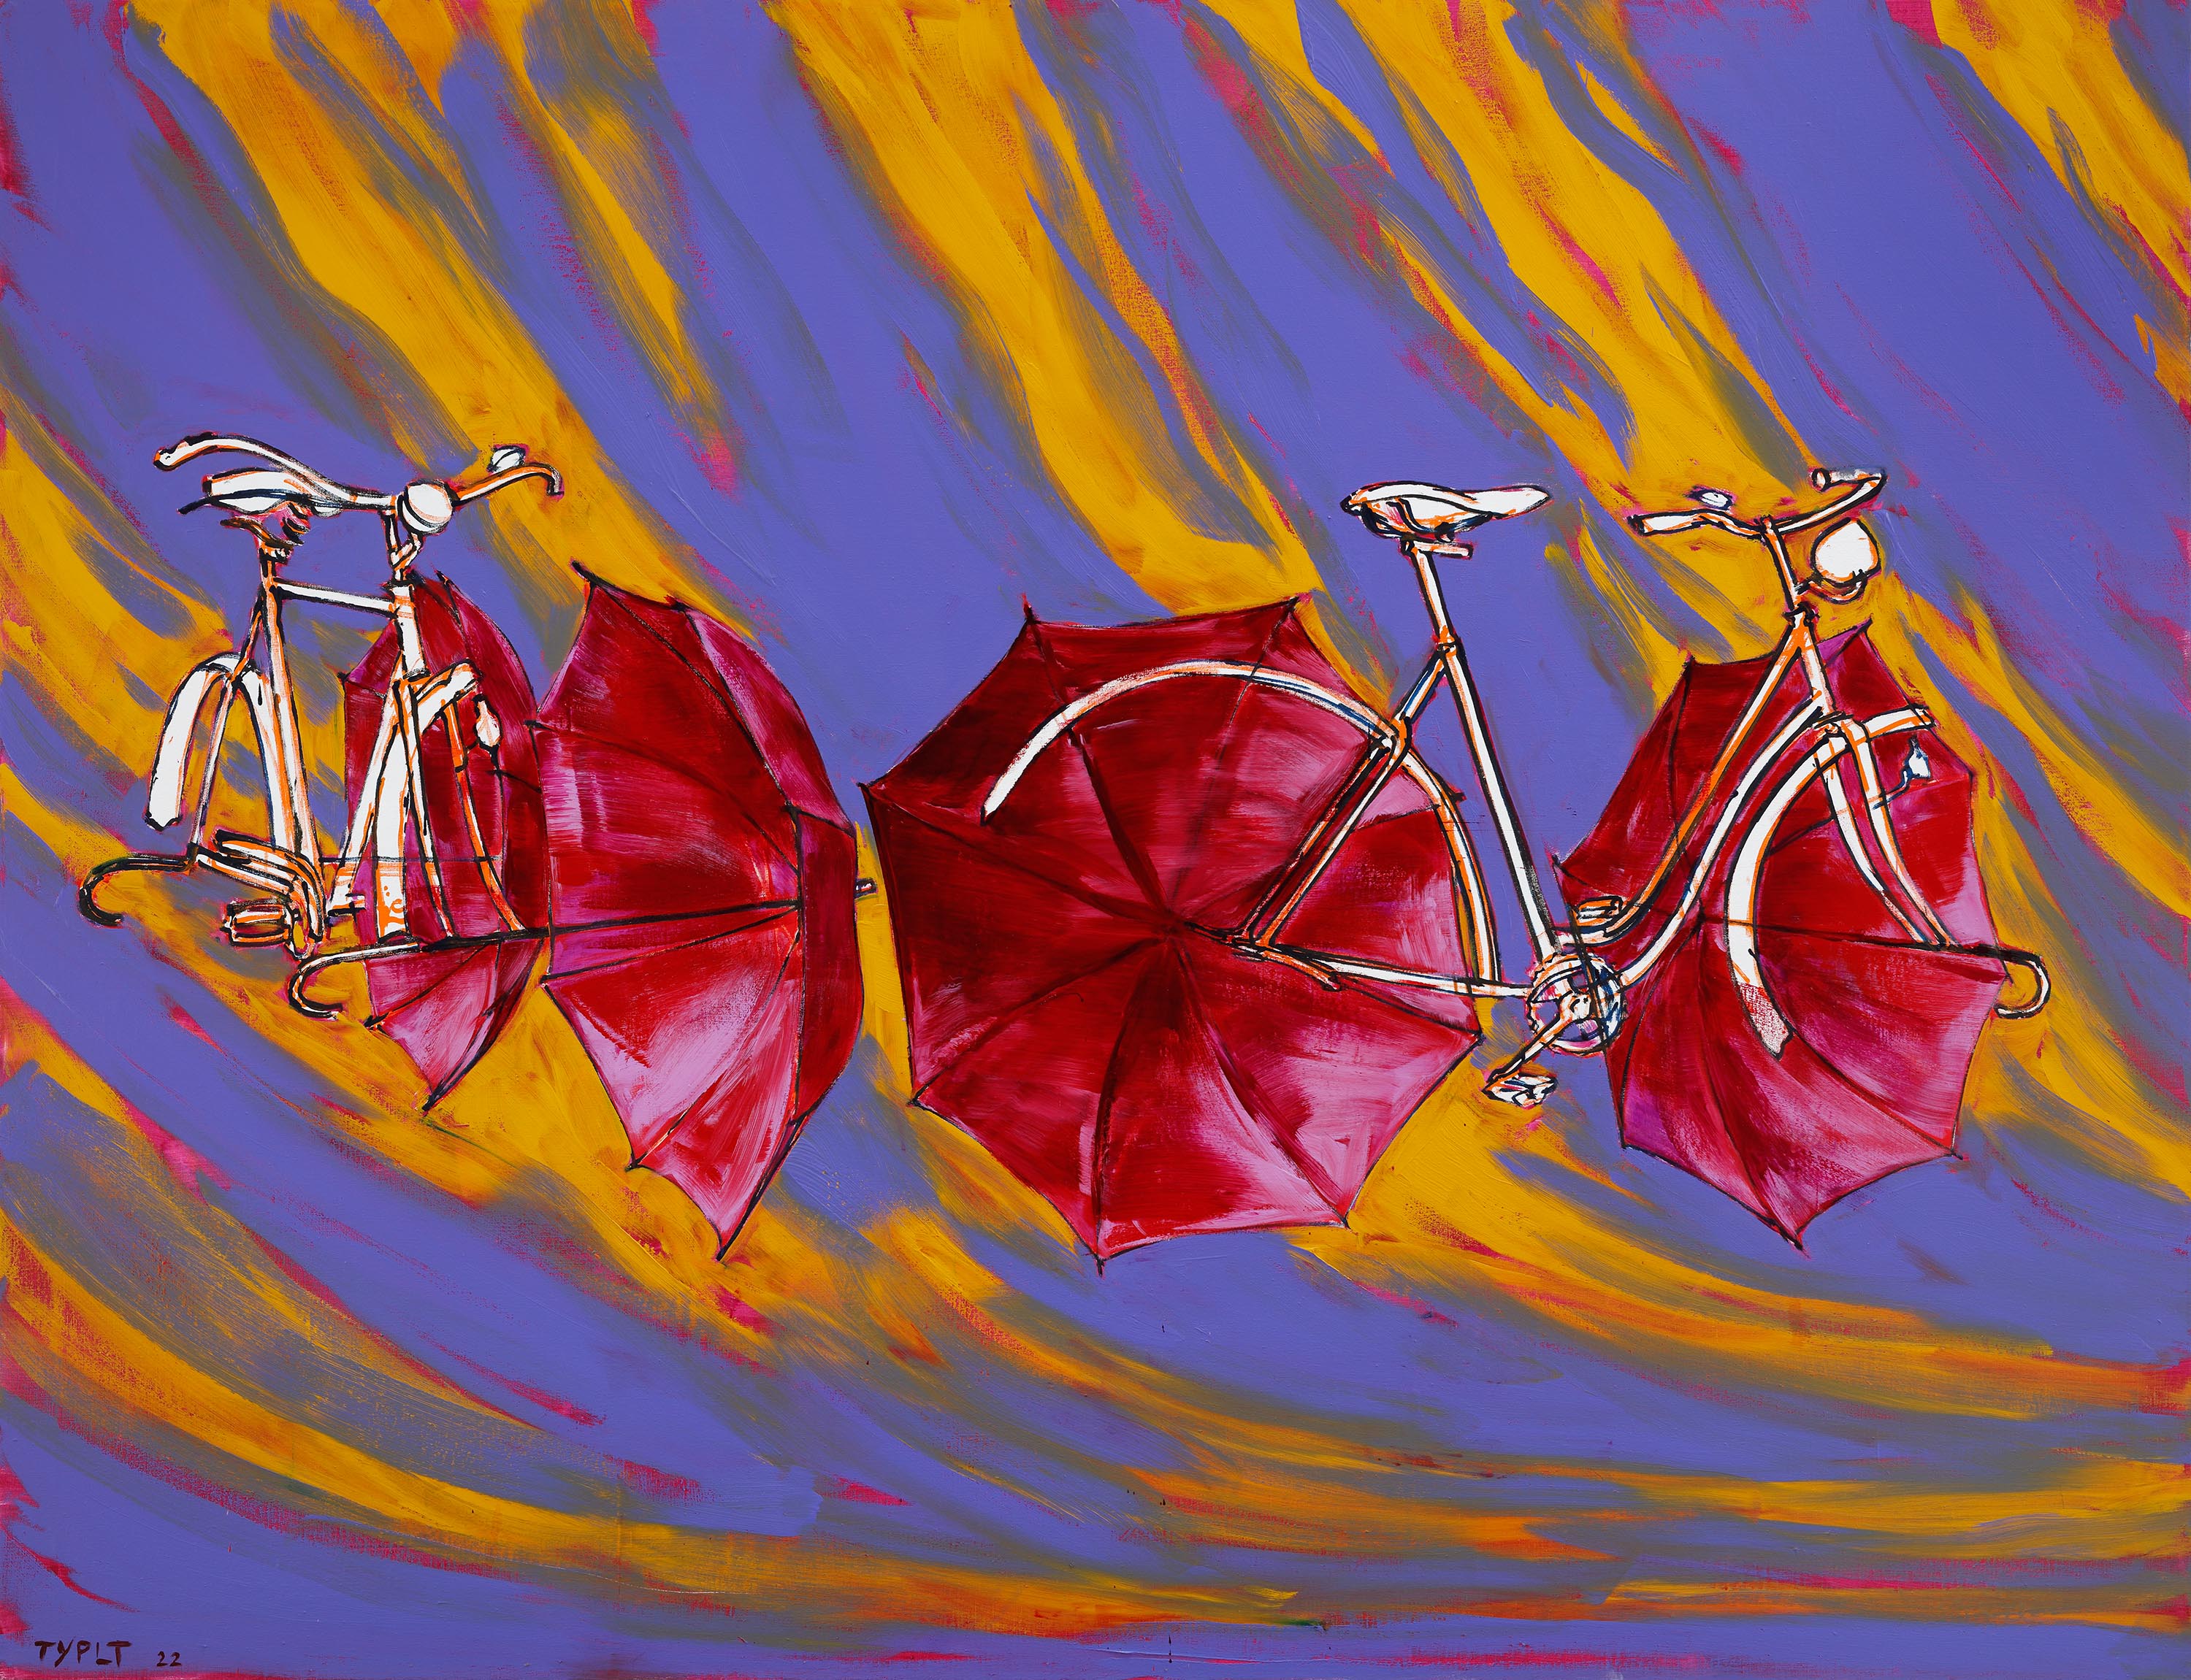 Lubomír Typlt, White Sun Bicycles, oil on canvas, 260 x 200 cm, 2022.